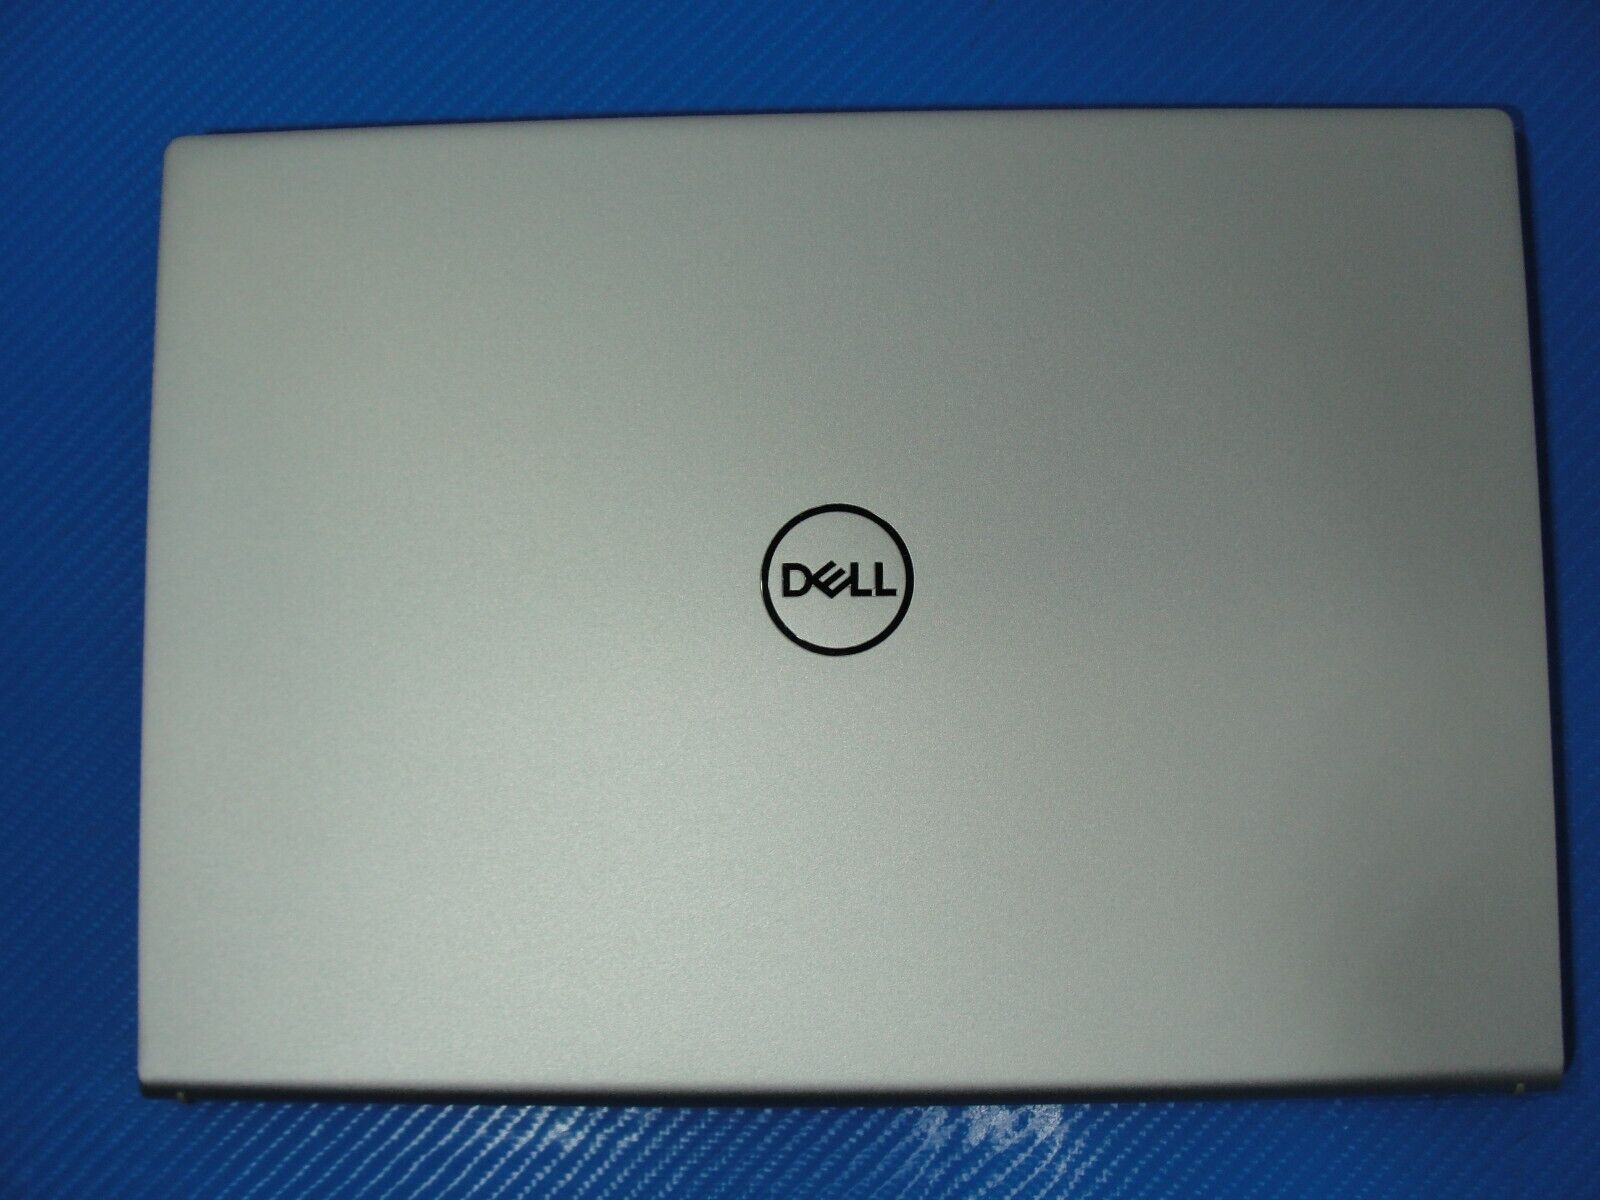 Dell Inspiron 5310 13.3